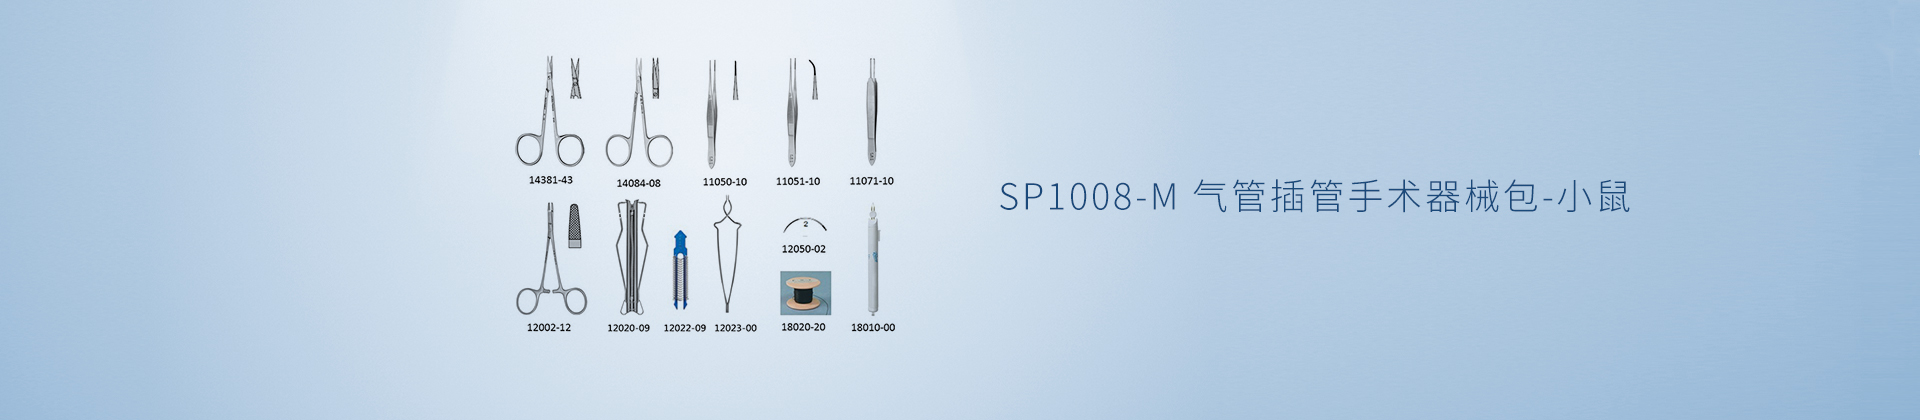 SP1008-M 气管插管手术器械包-小鼠